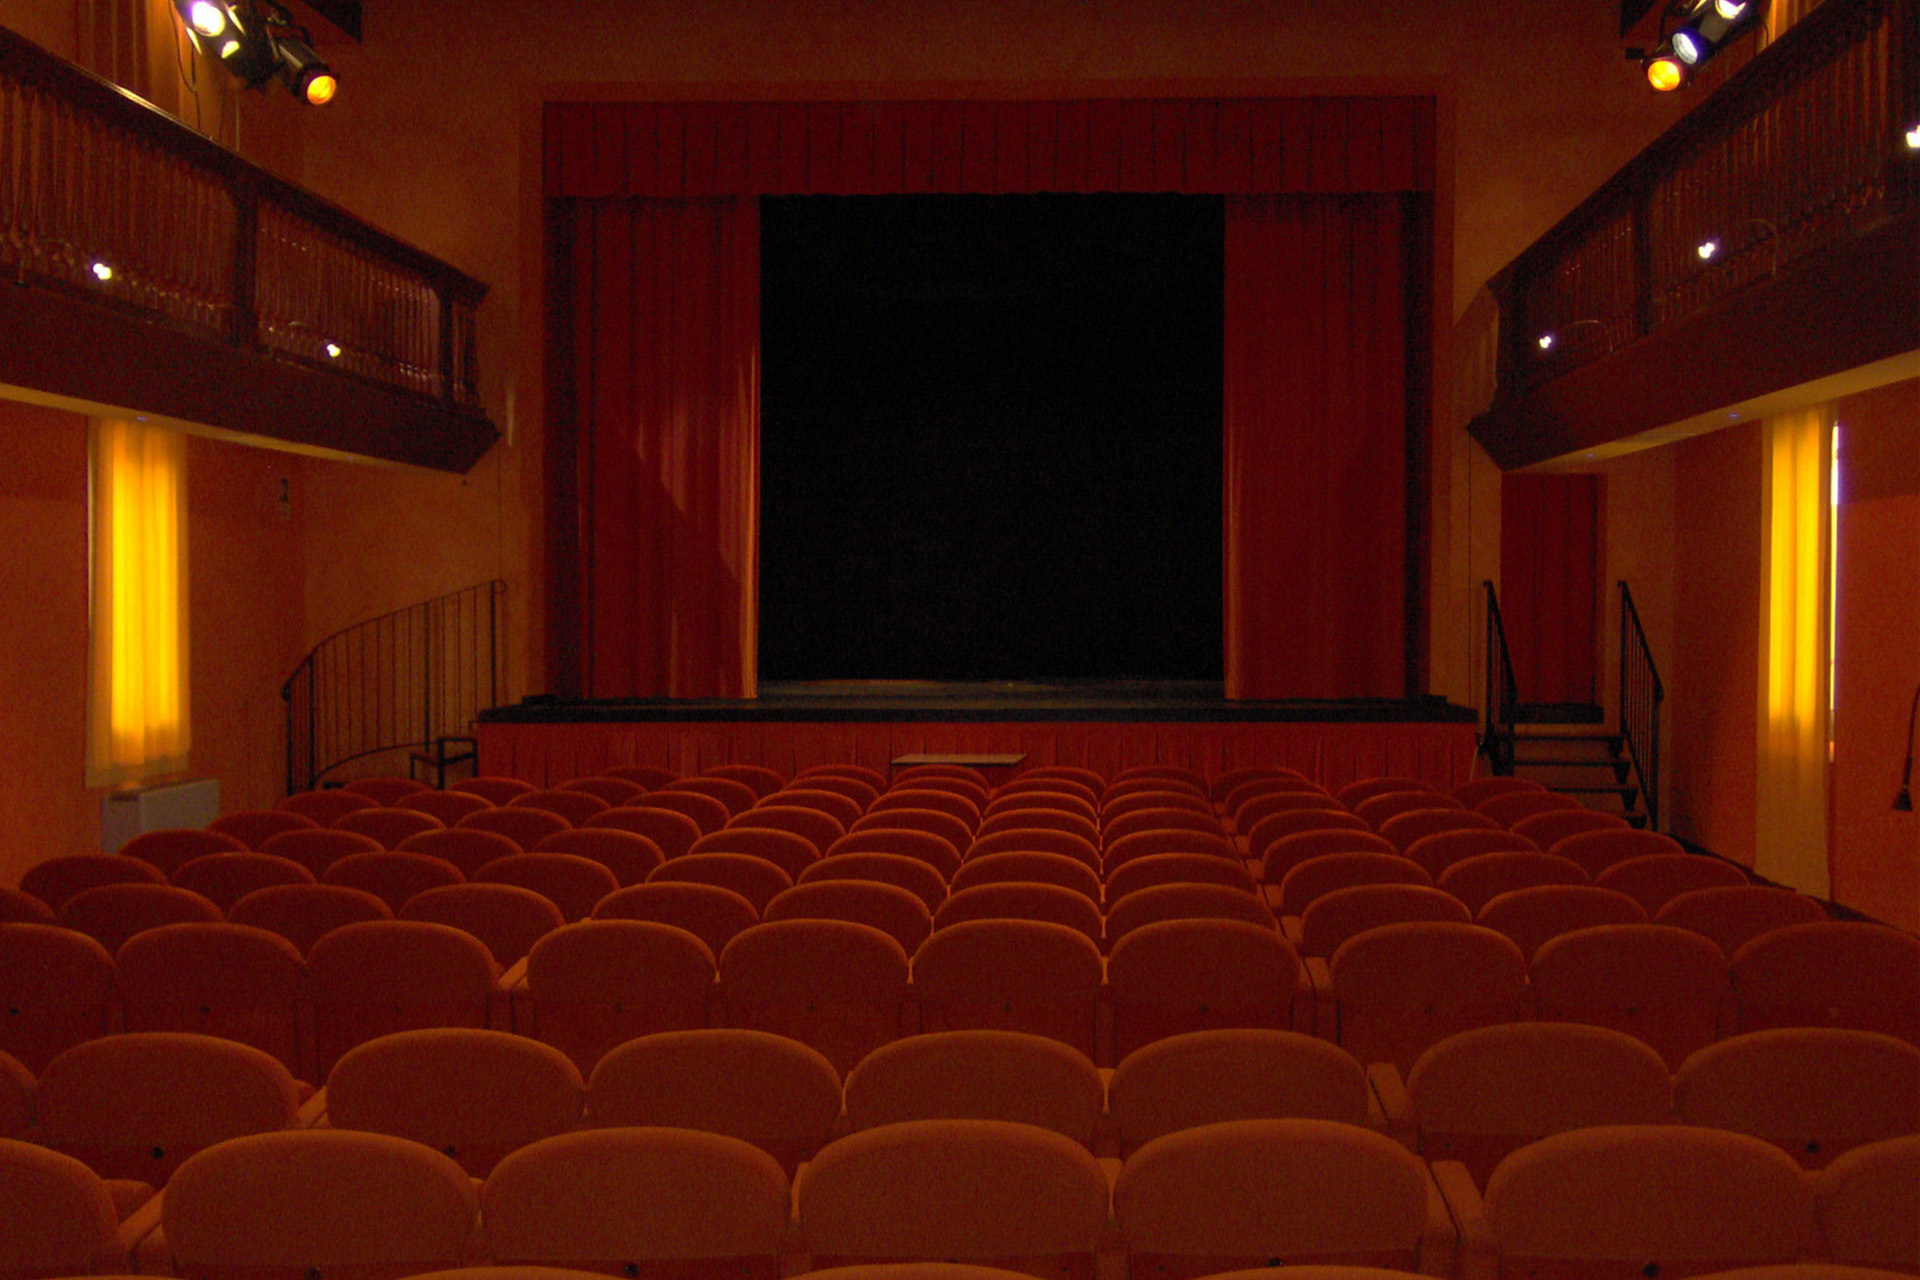 Teatro Comunale of Castello d'Argile - Curtains for multi-purpose ...